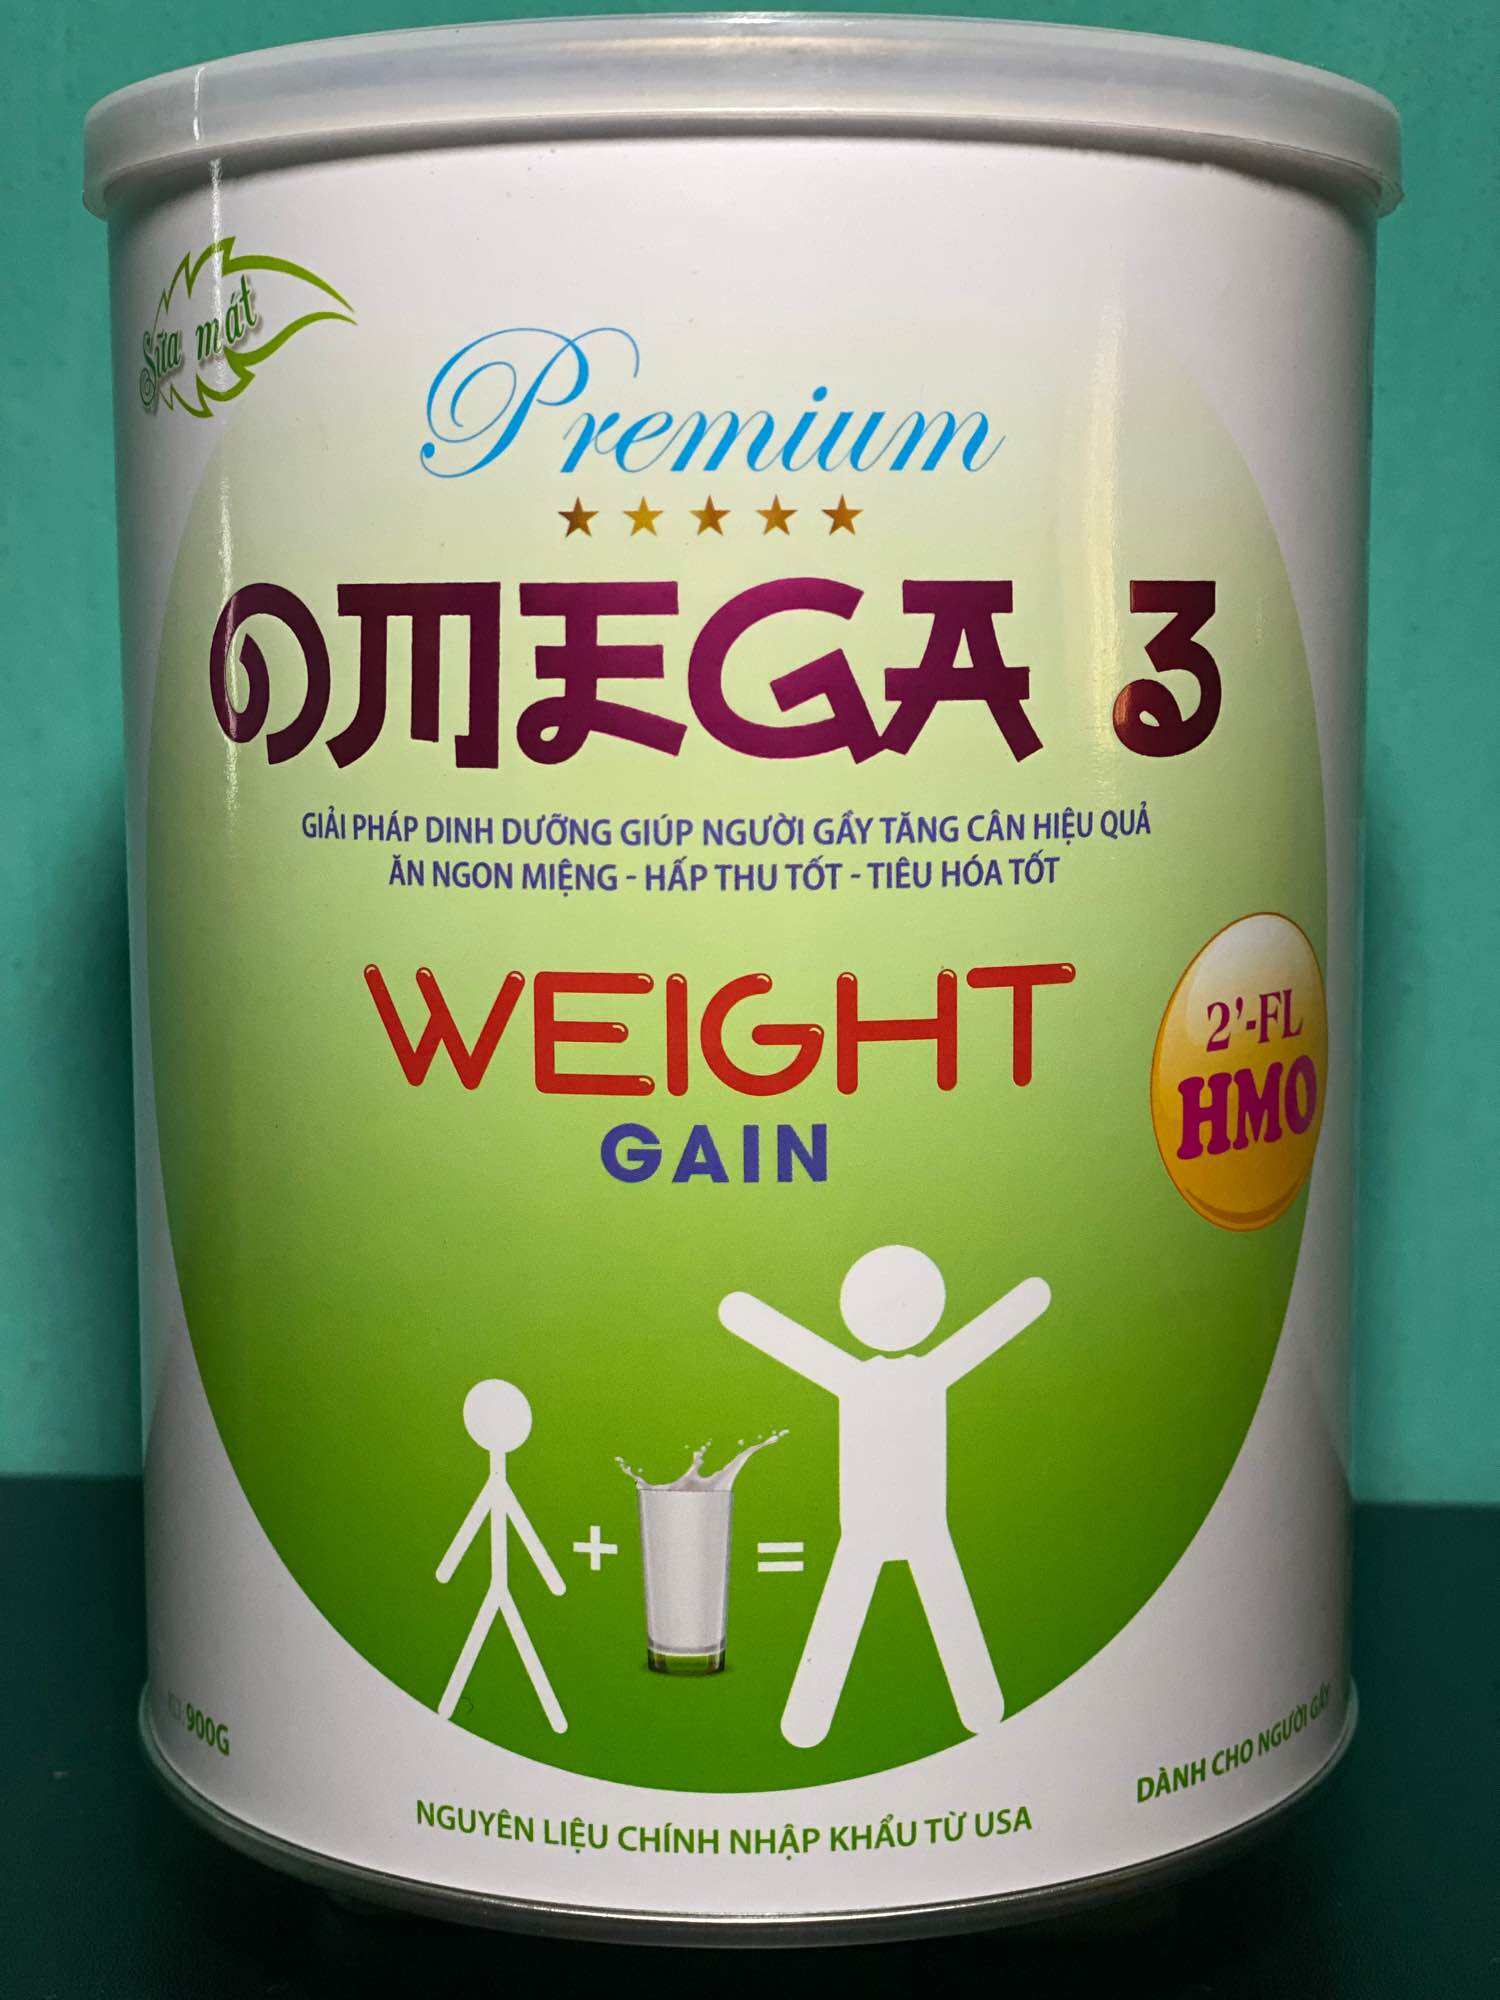 Sữa bột cho người gầy OMEGA WEIGHT GAIN - giải pháp tăng cân cho người gầy